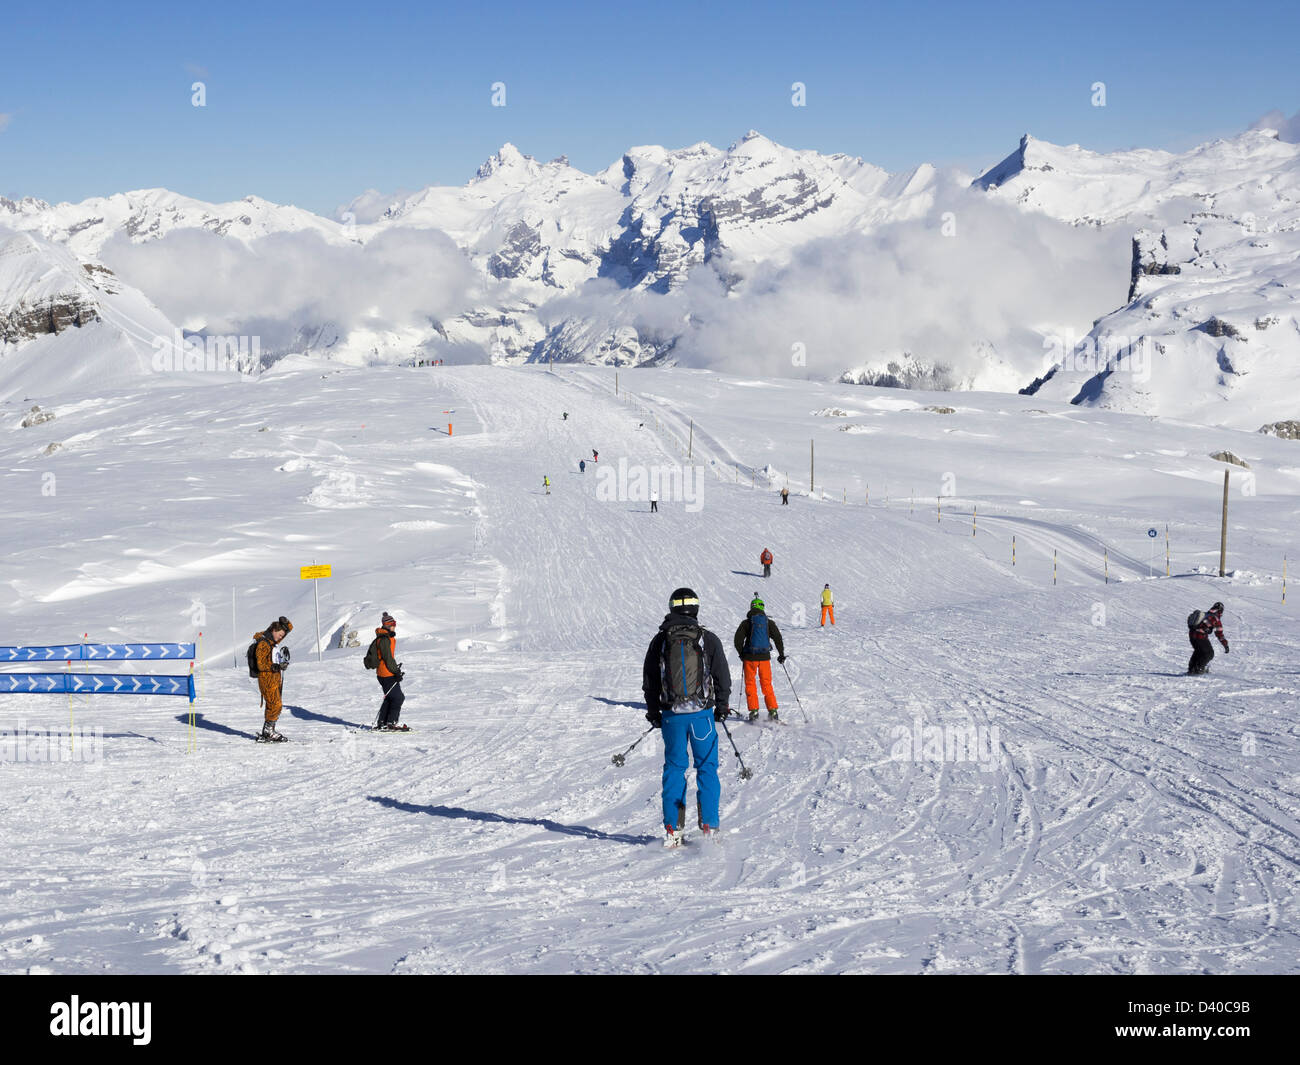 Les skieurs skier courent en bleu sur les grandes Platitudes dans le domaine skiable du Grand Massif avec des montagnes enneigées dans les Alpes françaises. Flaine, France Banque D'Images